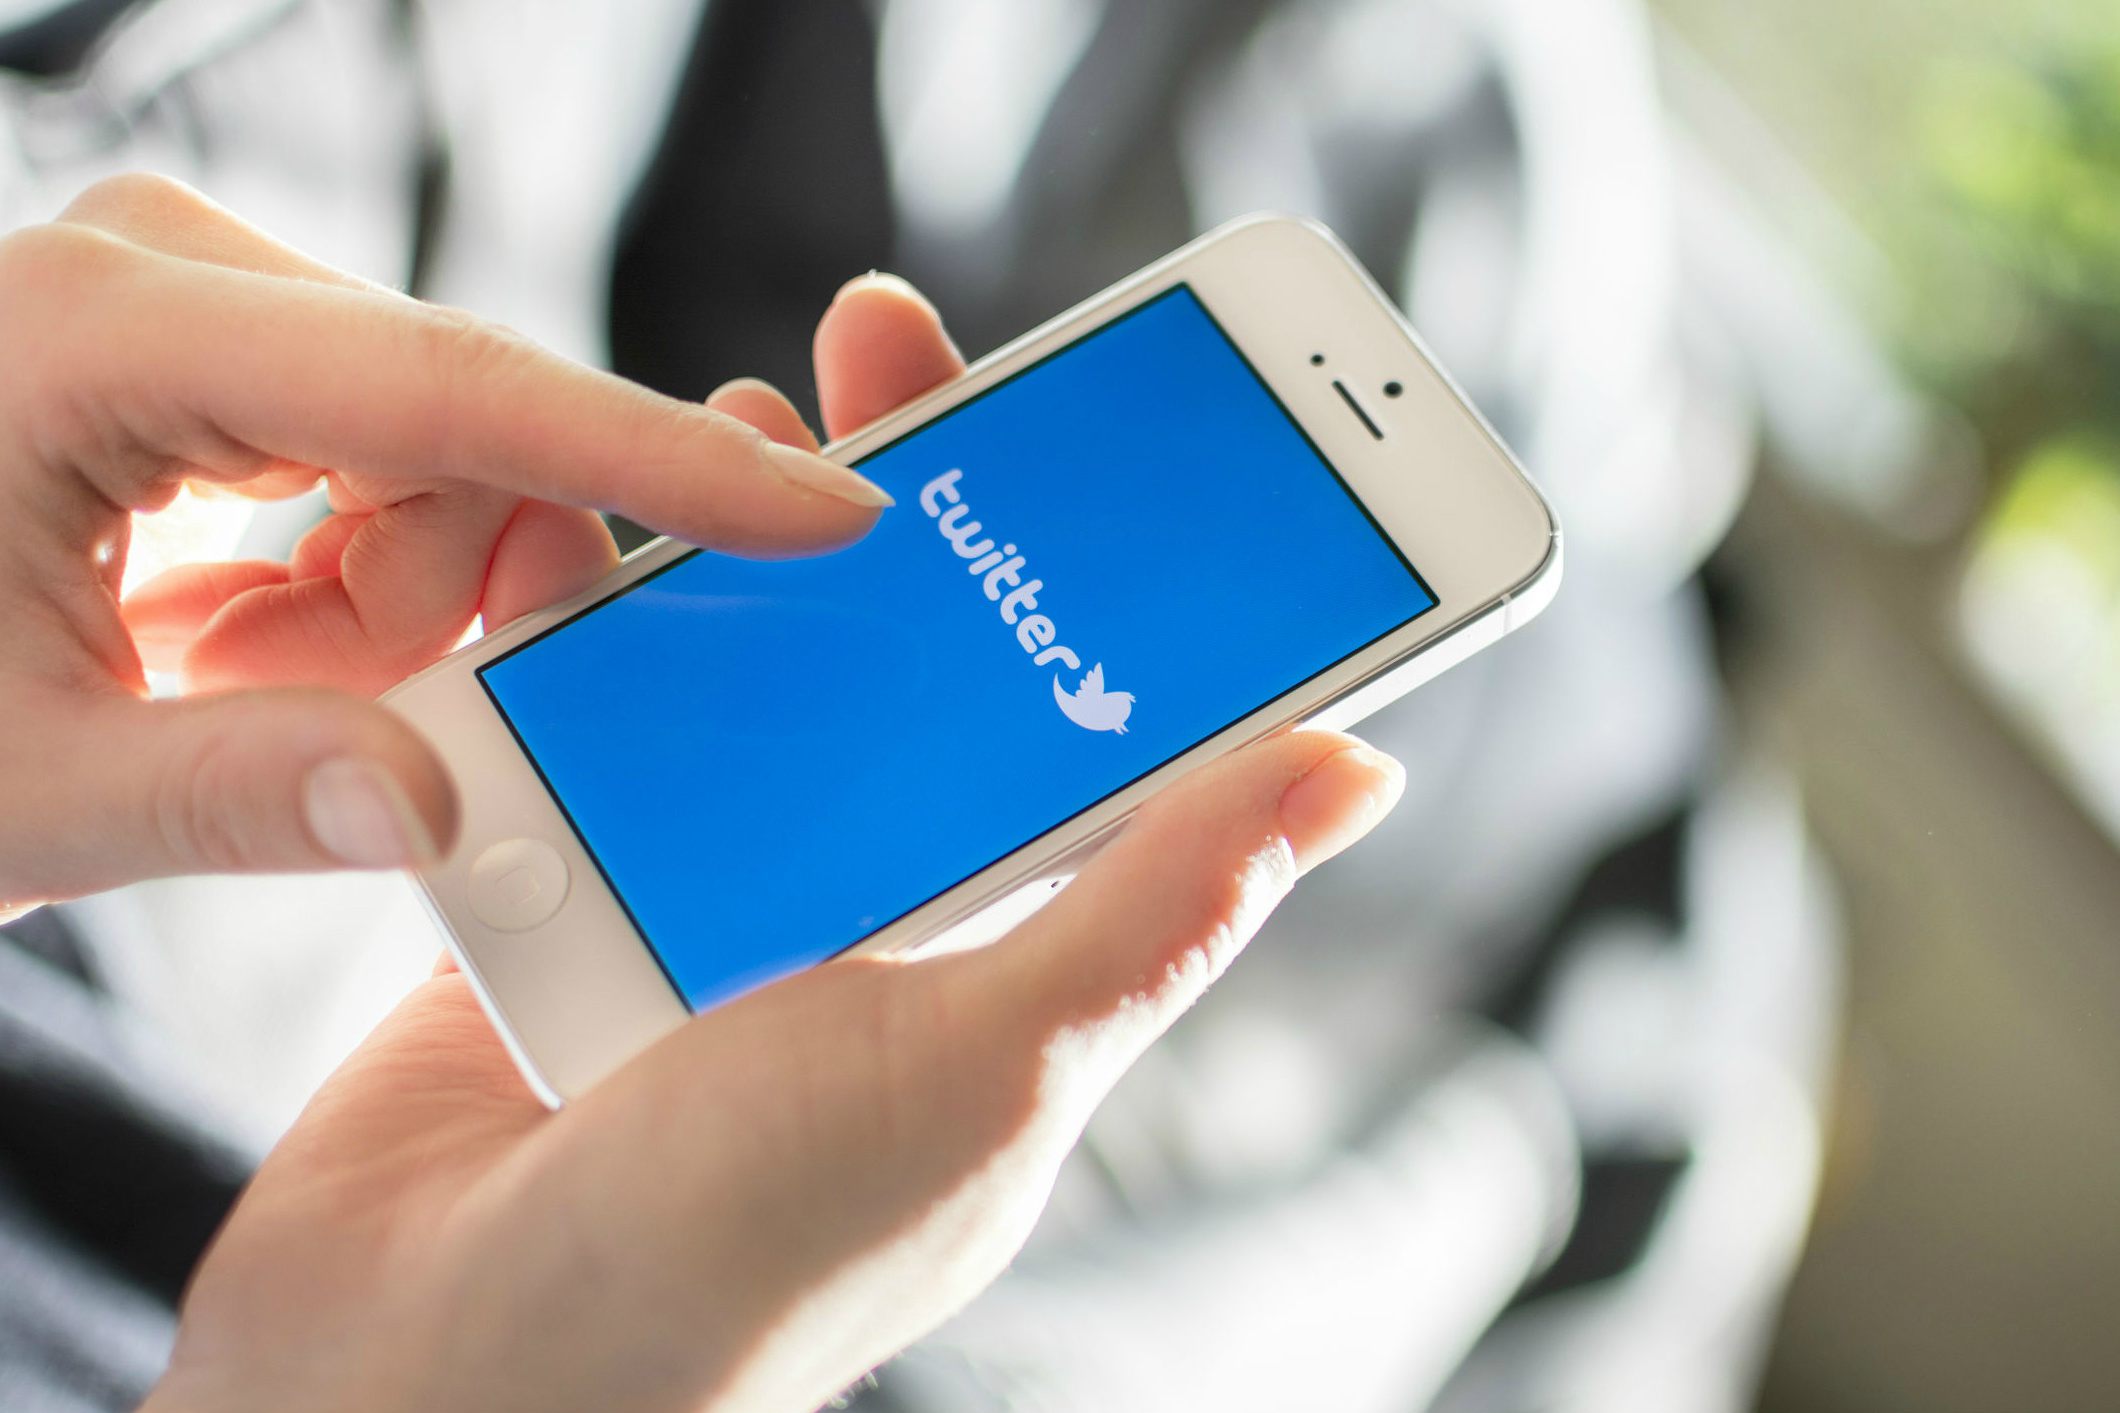 Doblellave-Twitter suspendió más de un millón de cuentas por contenido terrorista